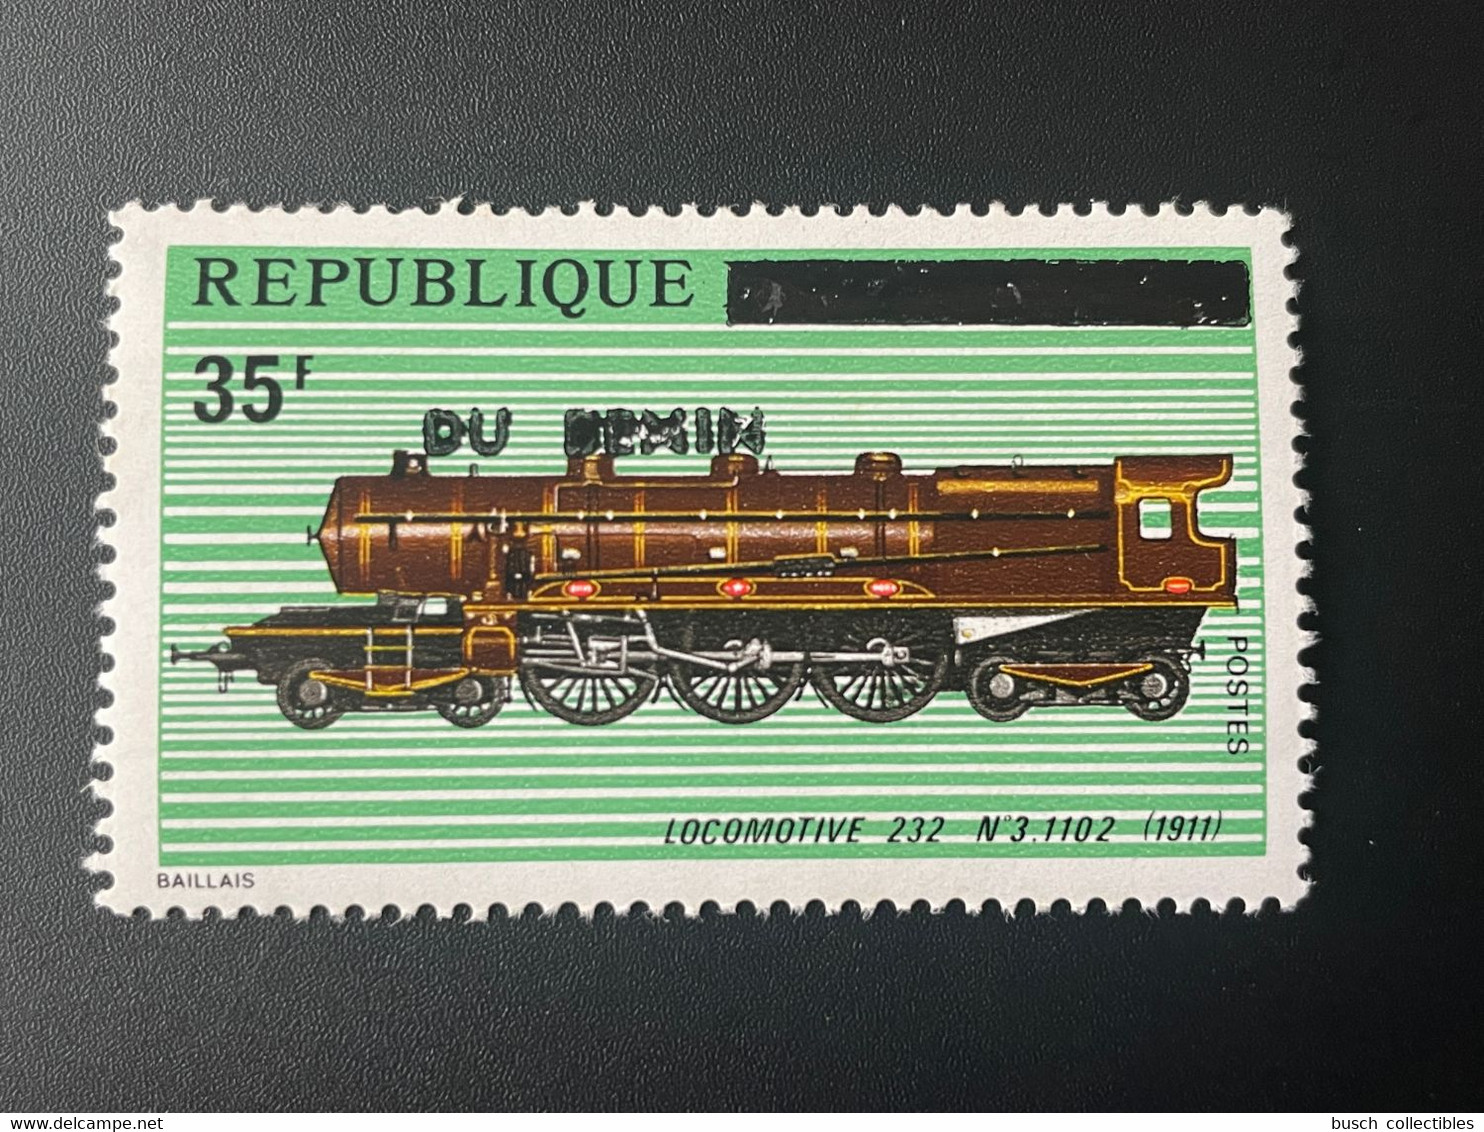 Benin 1992 Mi. 524 Surchargé Overprint Locomotive 232 N°3.1102 1911 Lokomotive Train Railways Eisenbahn Zug - Benin – Dahomey (1960-...)